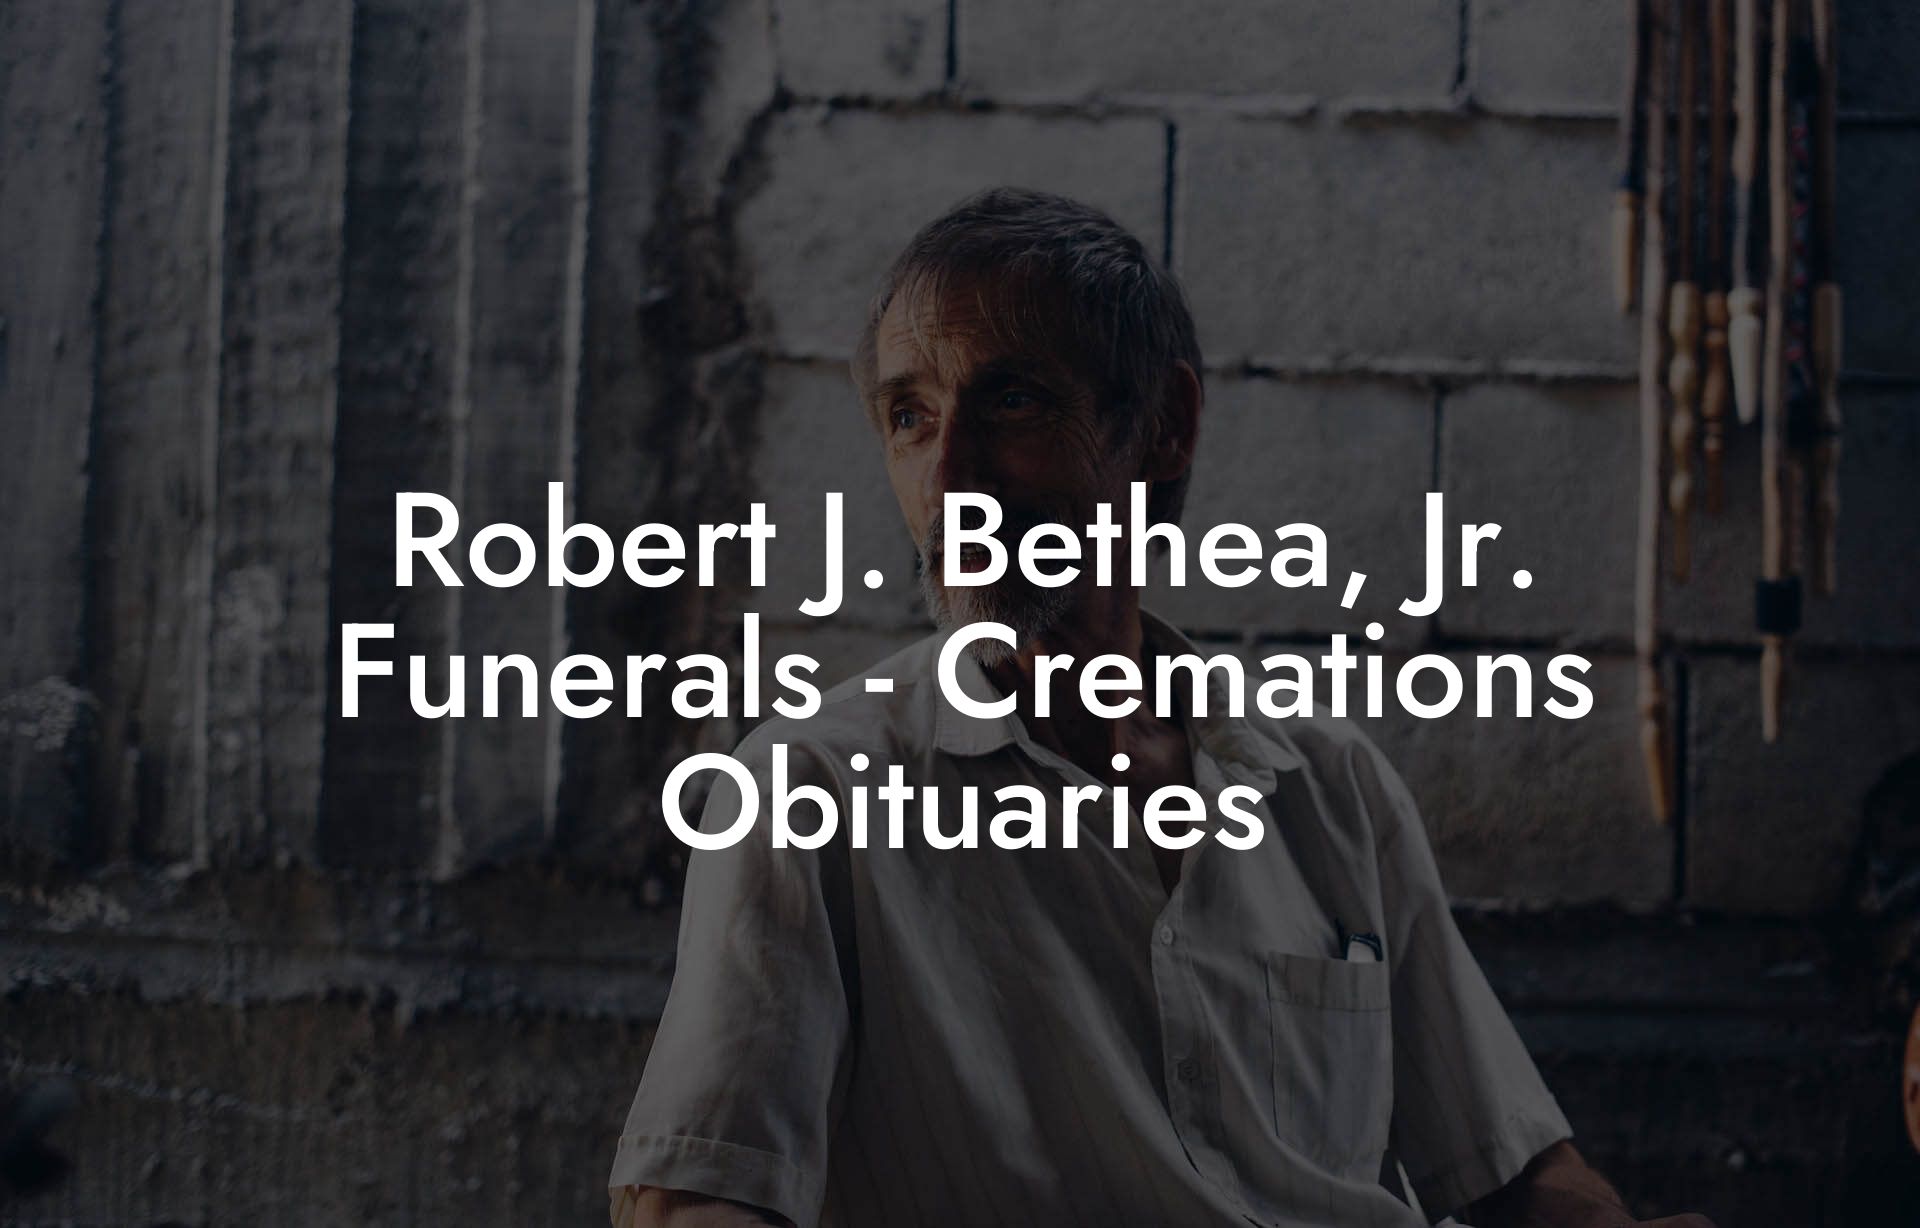 Robert J. Bethea, Jr. Funerals - Cremations Obituaries